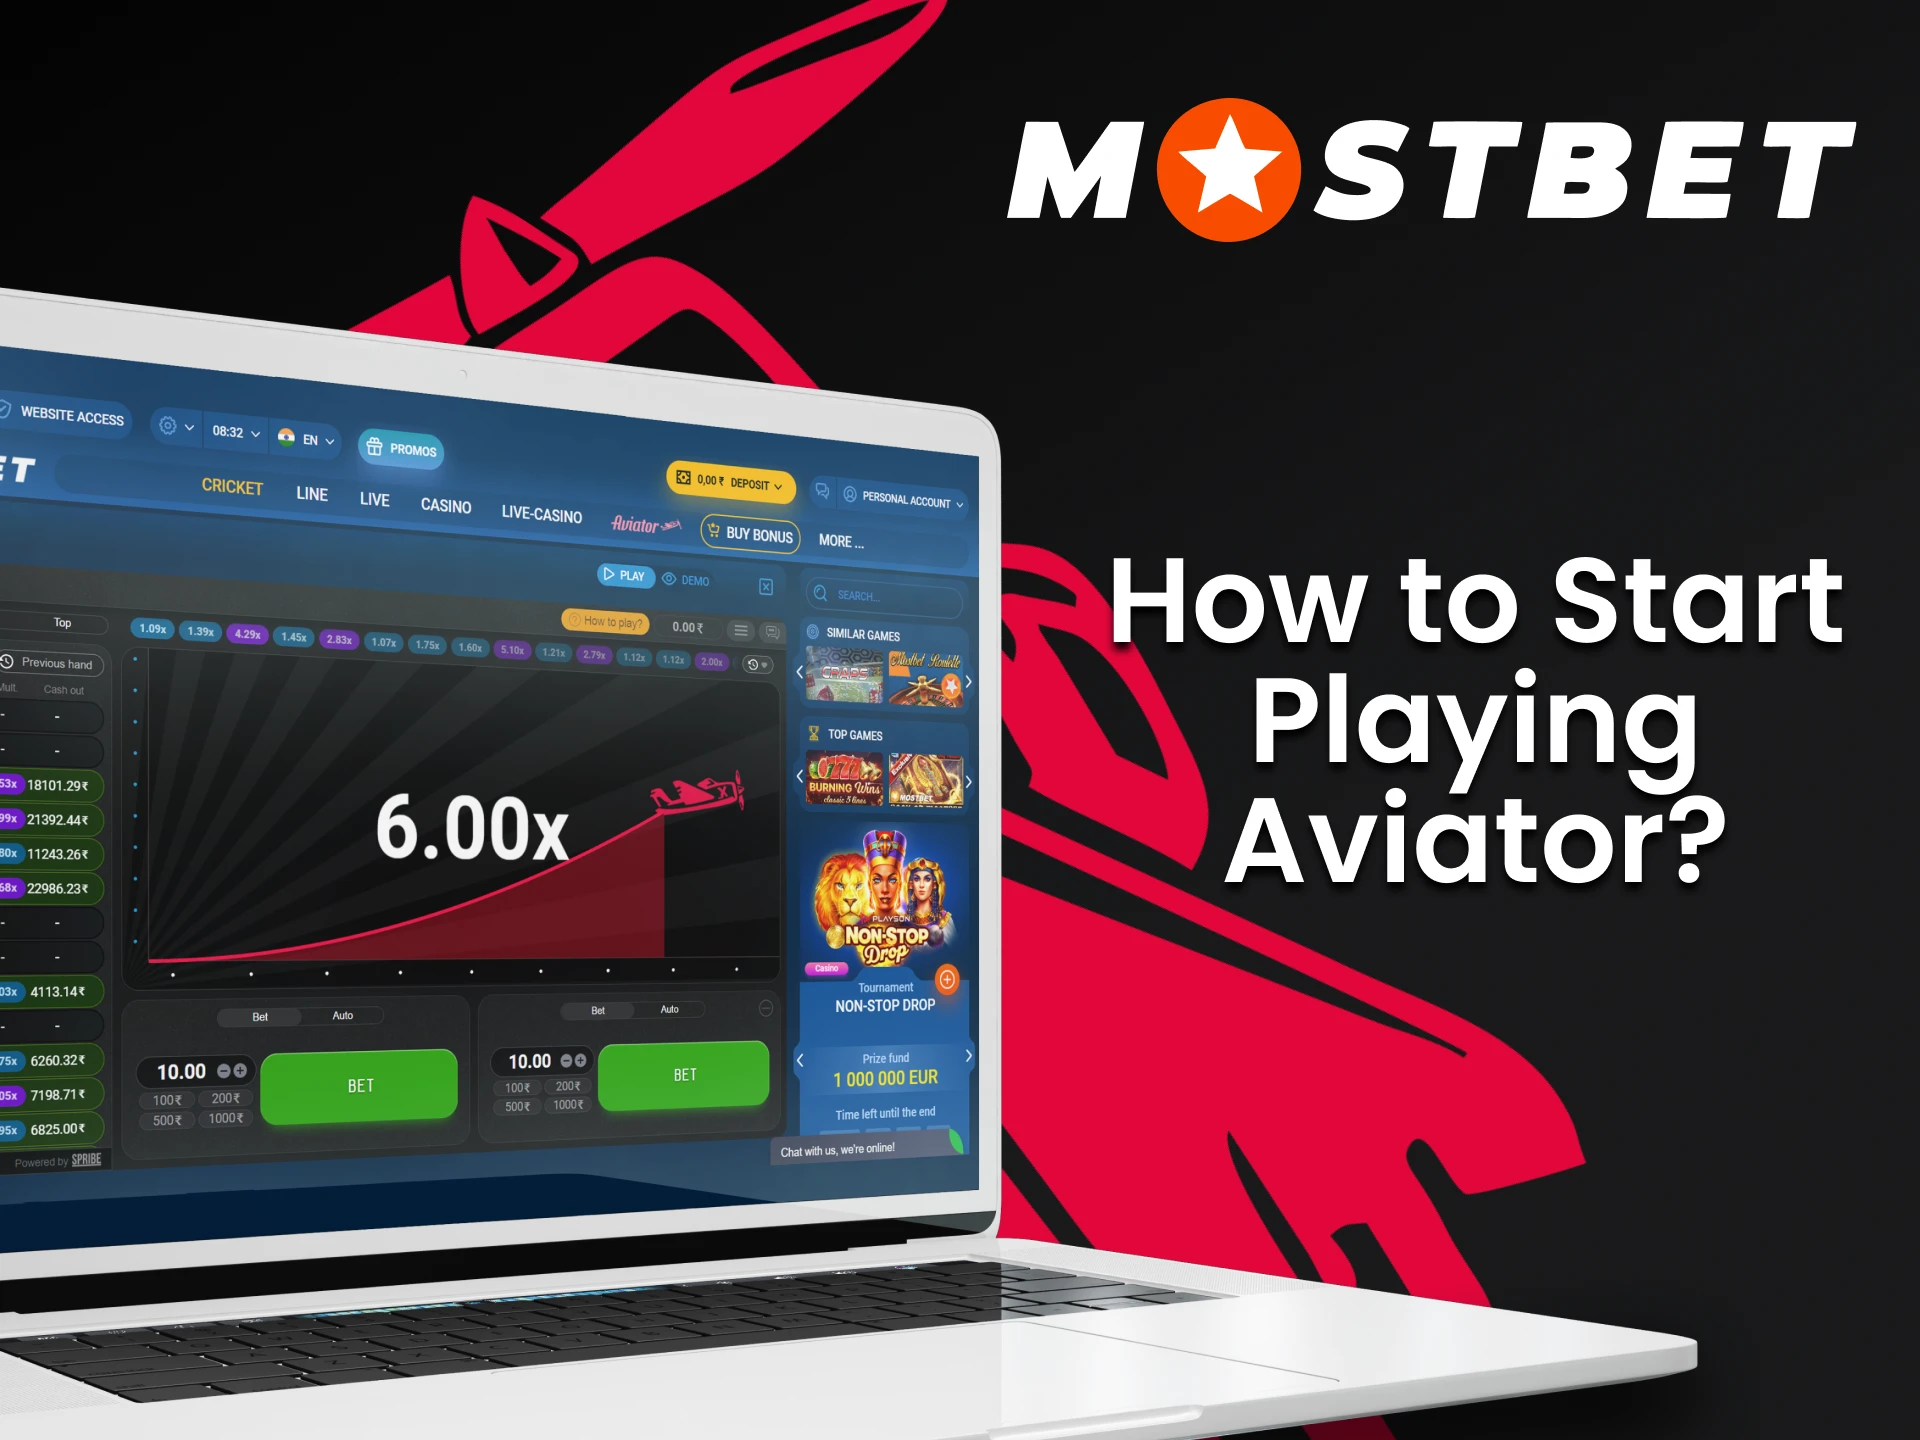 Crie uma conta na Mostbet para jogar Aviator.